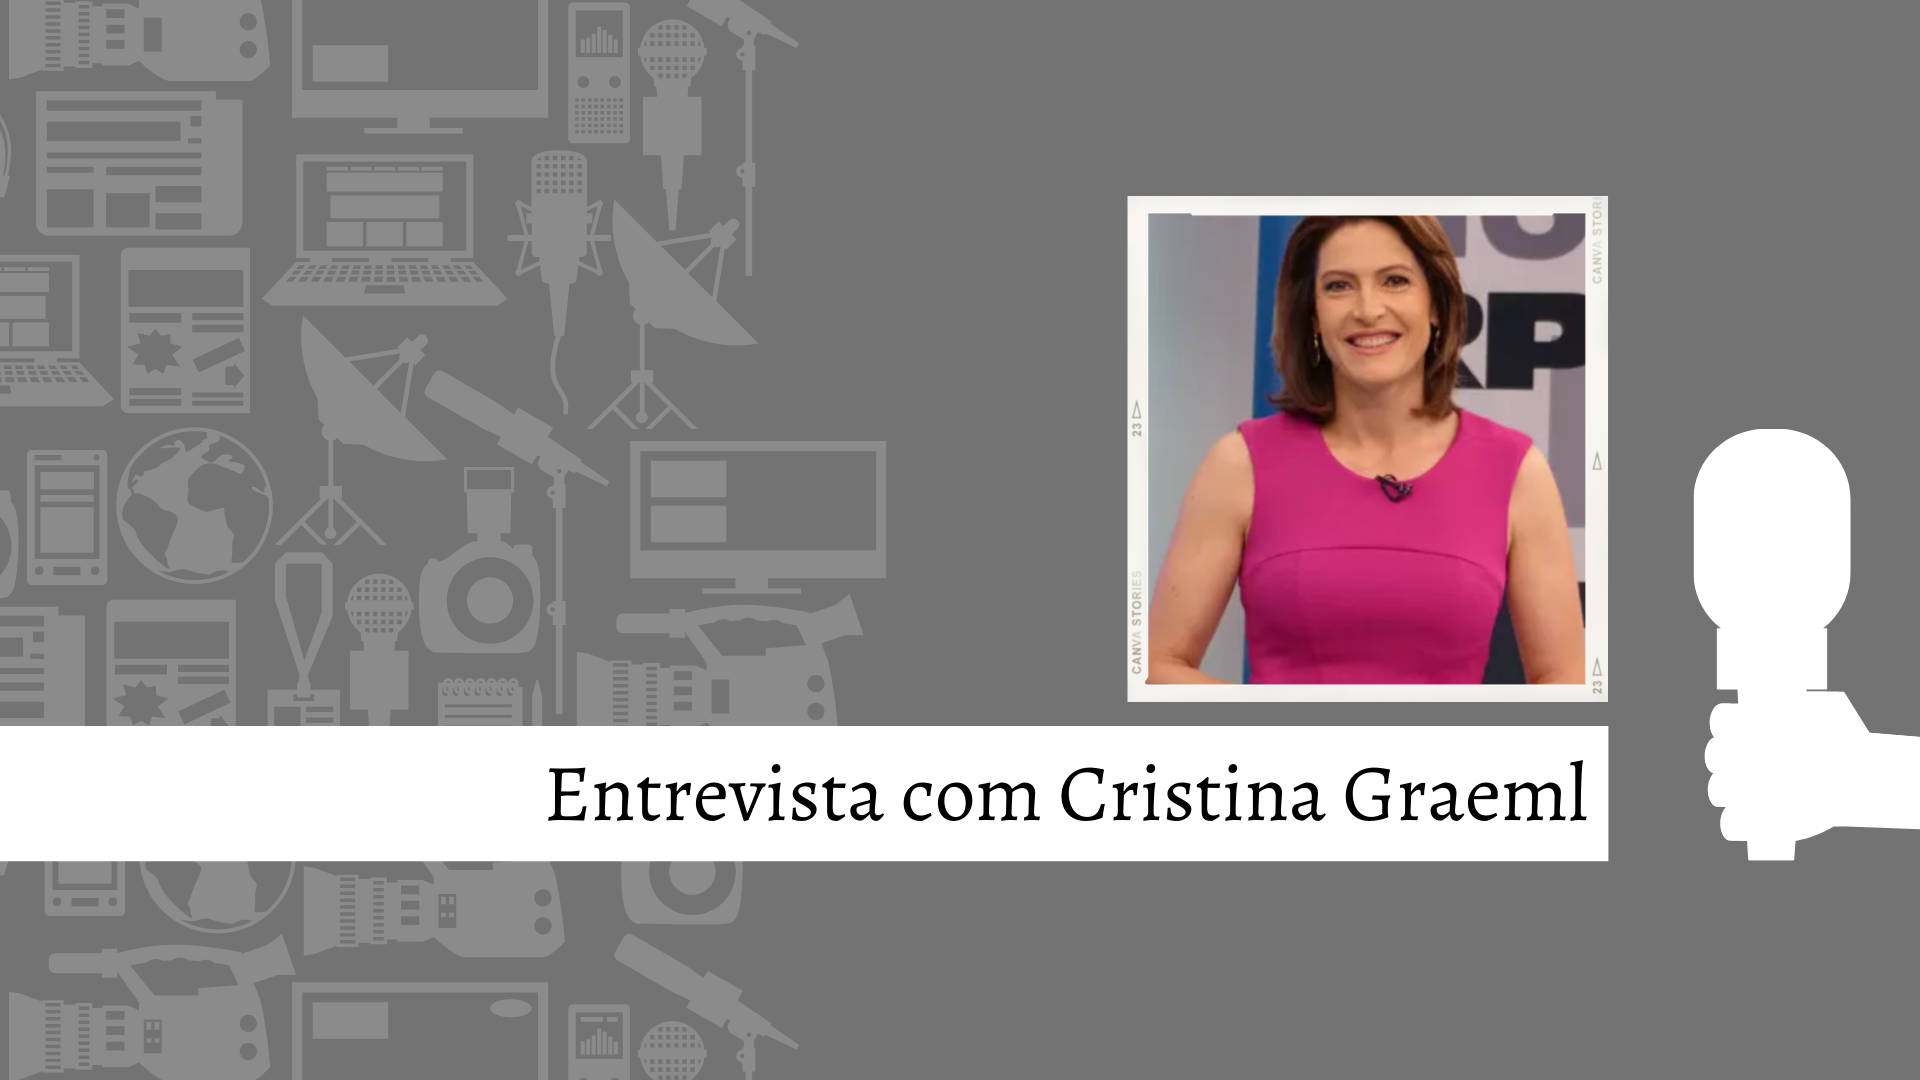 Especial: Entrevista com profissionais da comunicação – Cristina Graeml